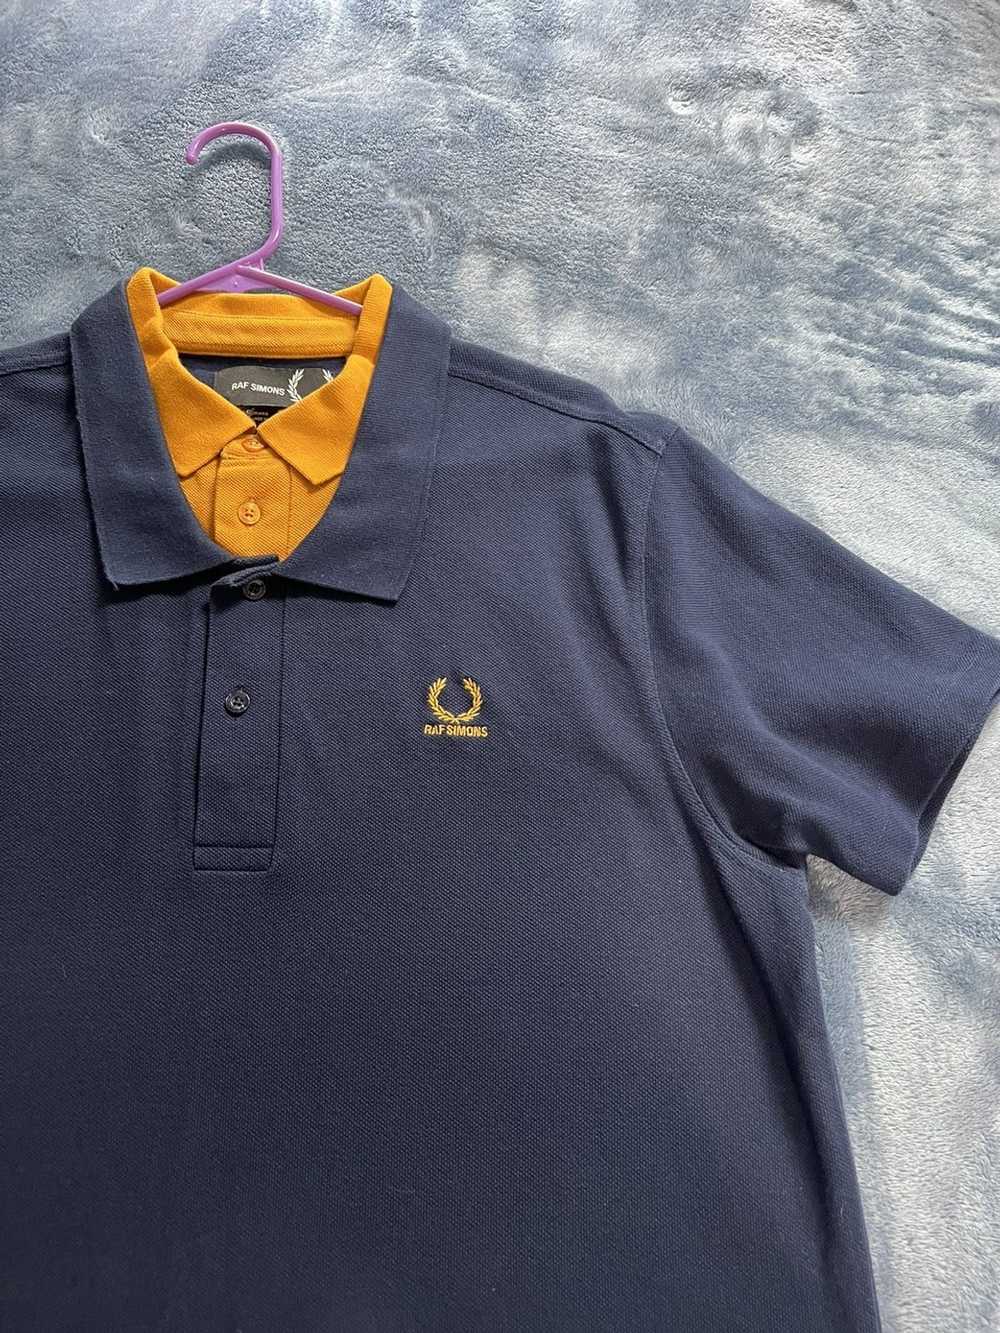 Fred Perry × Raf Simons Double collar polo shirt - image 2